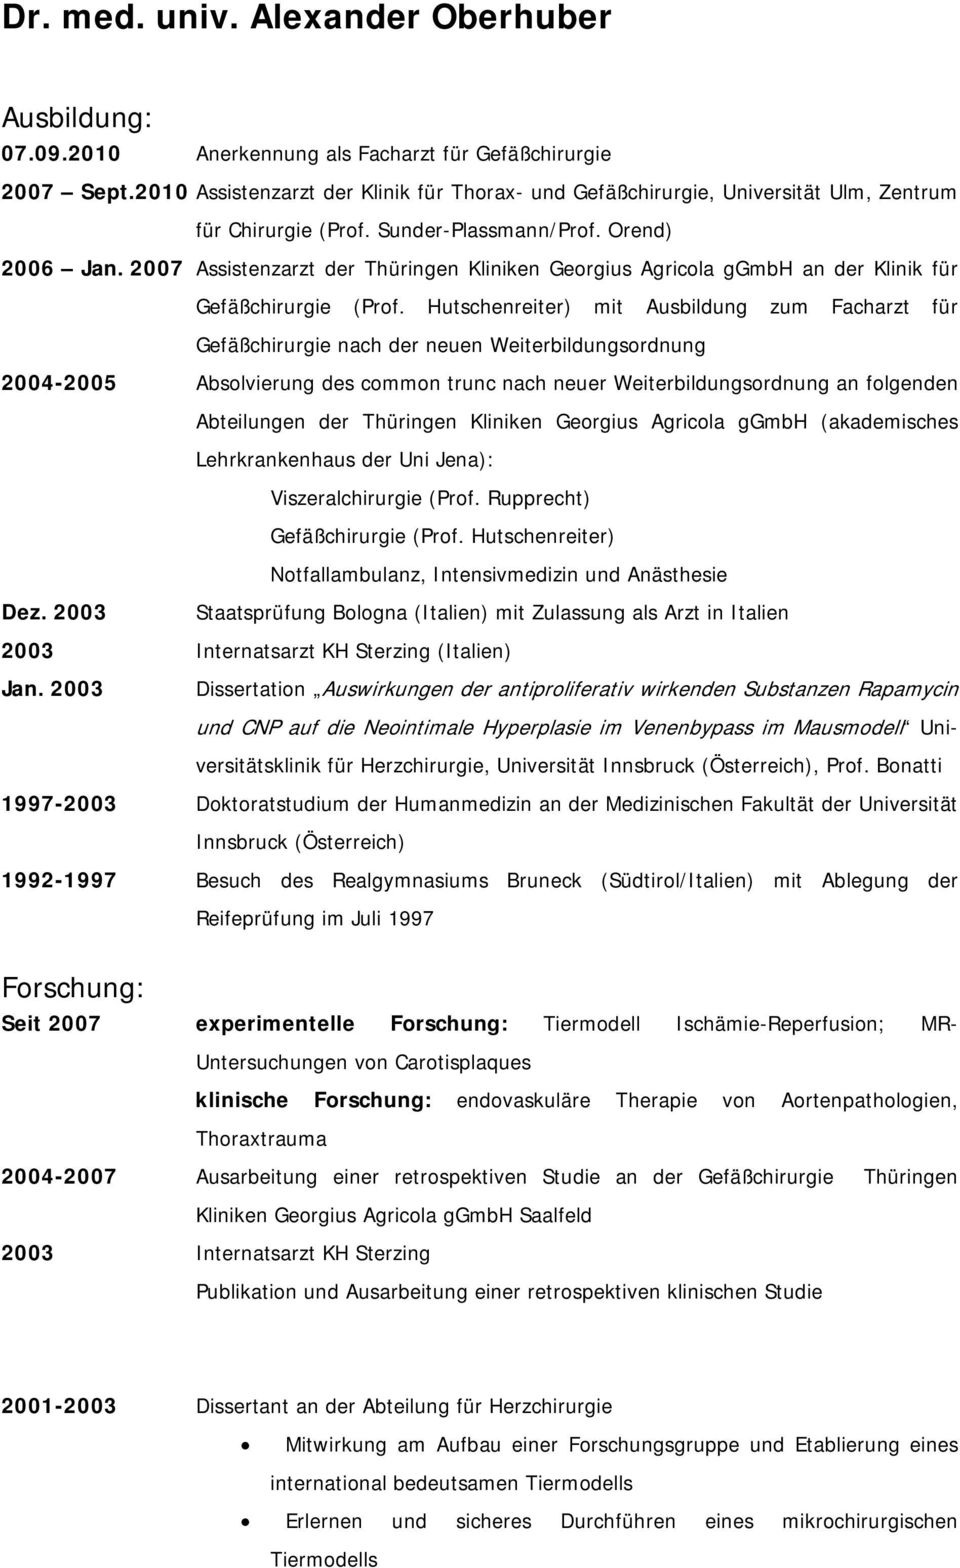 2007 Assistenzarzt der Thüringen Kliniken Georgius Agricola ggmbh an der Klinik für Gefäßchirurgie (Prof.